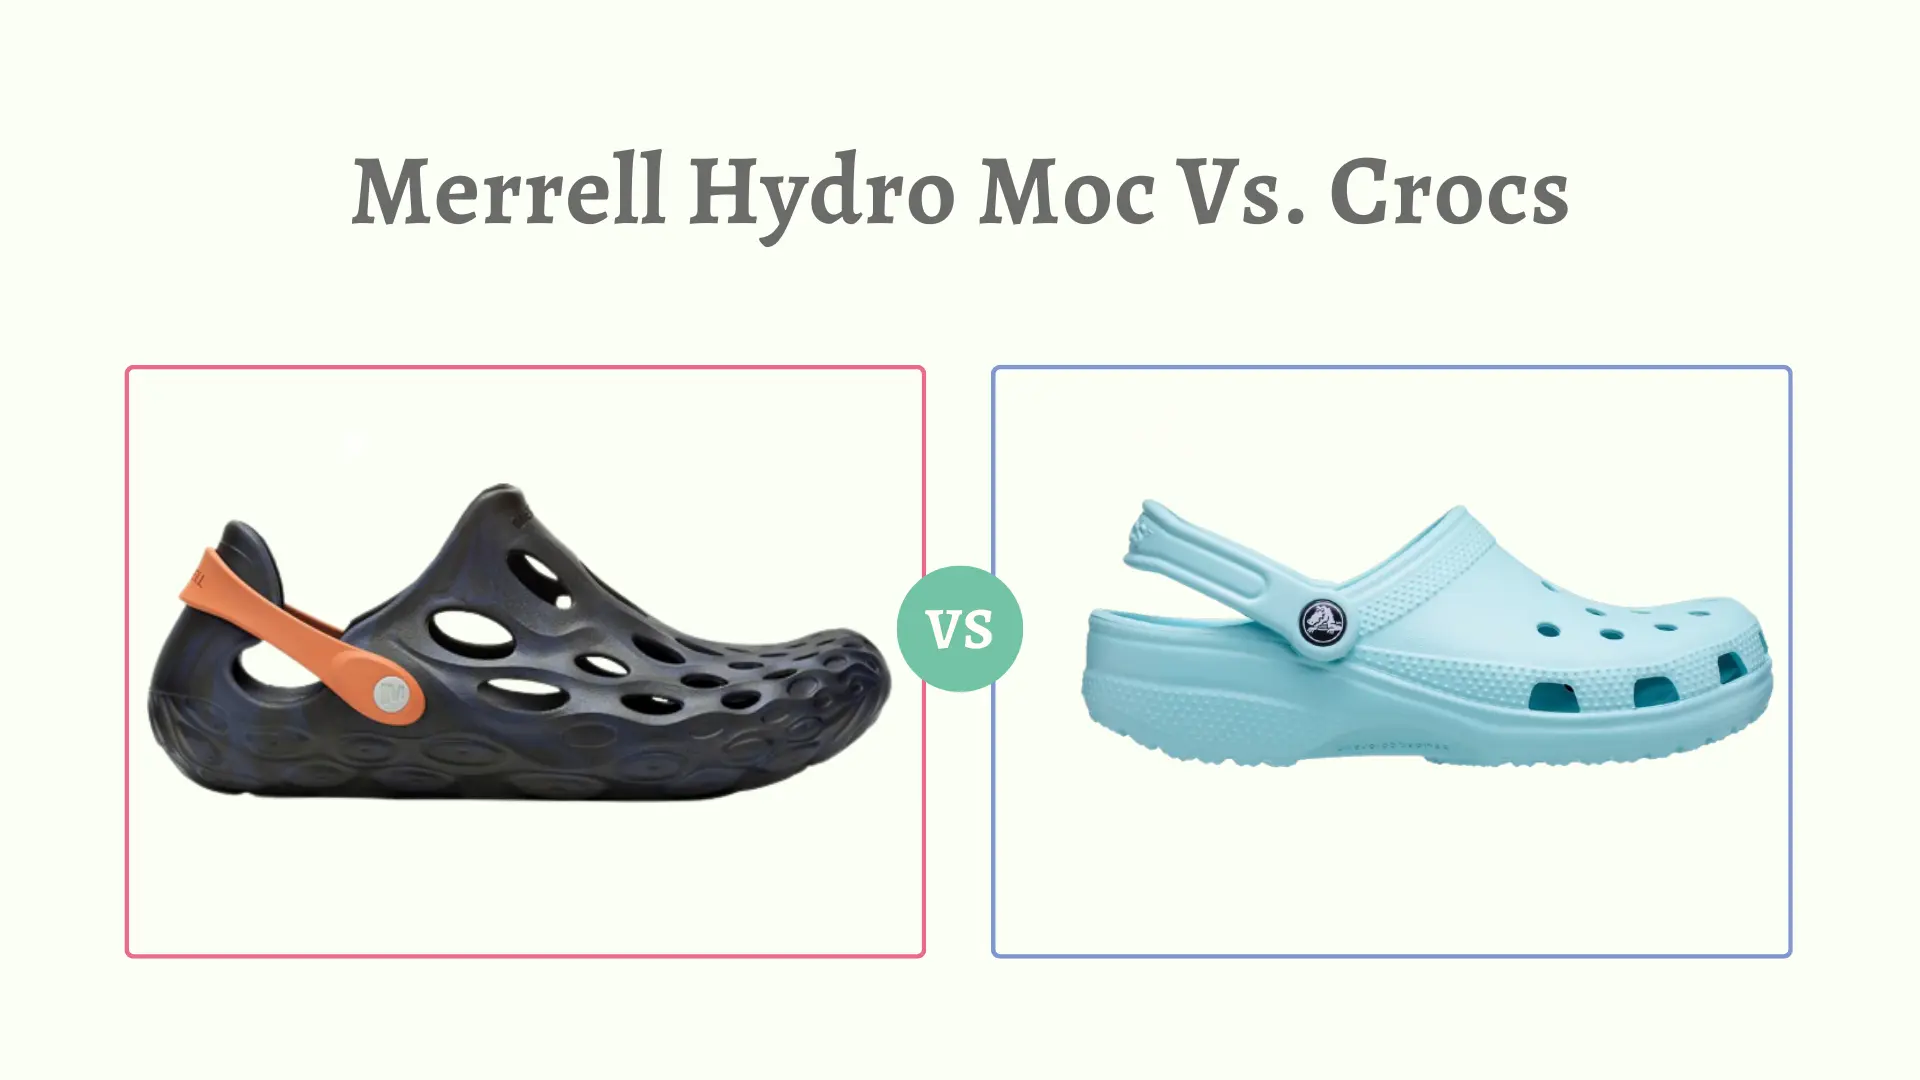 Merrell Hydro Moc Vs. Crocs